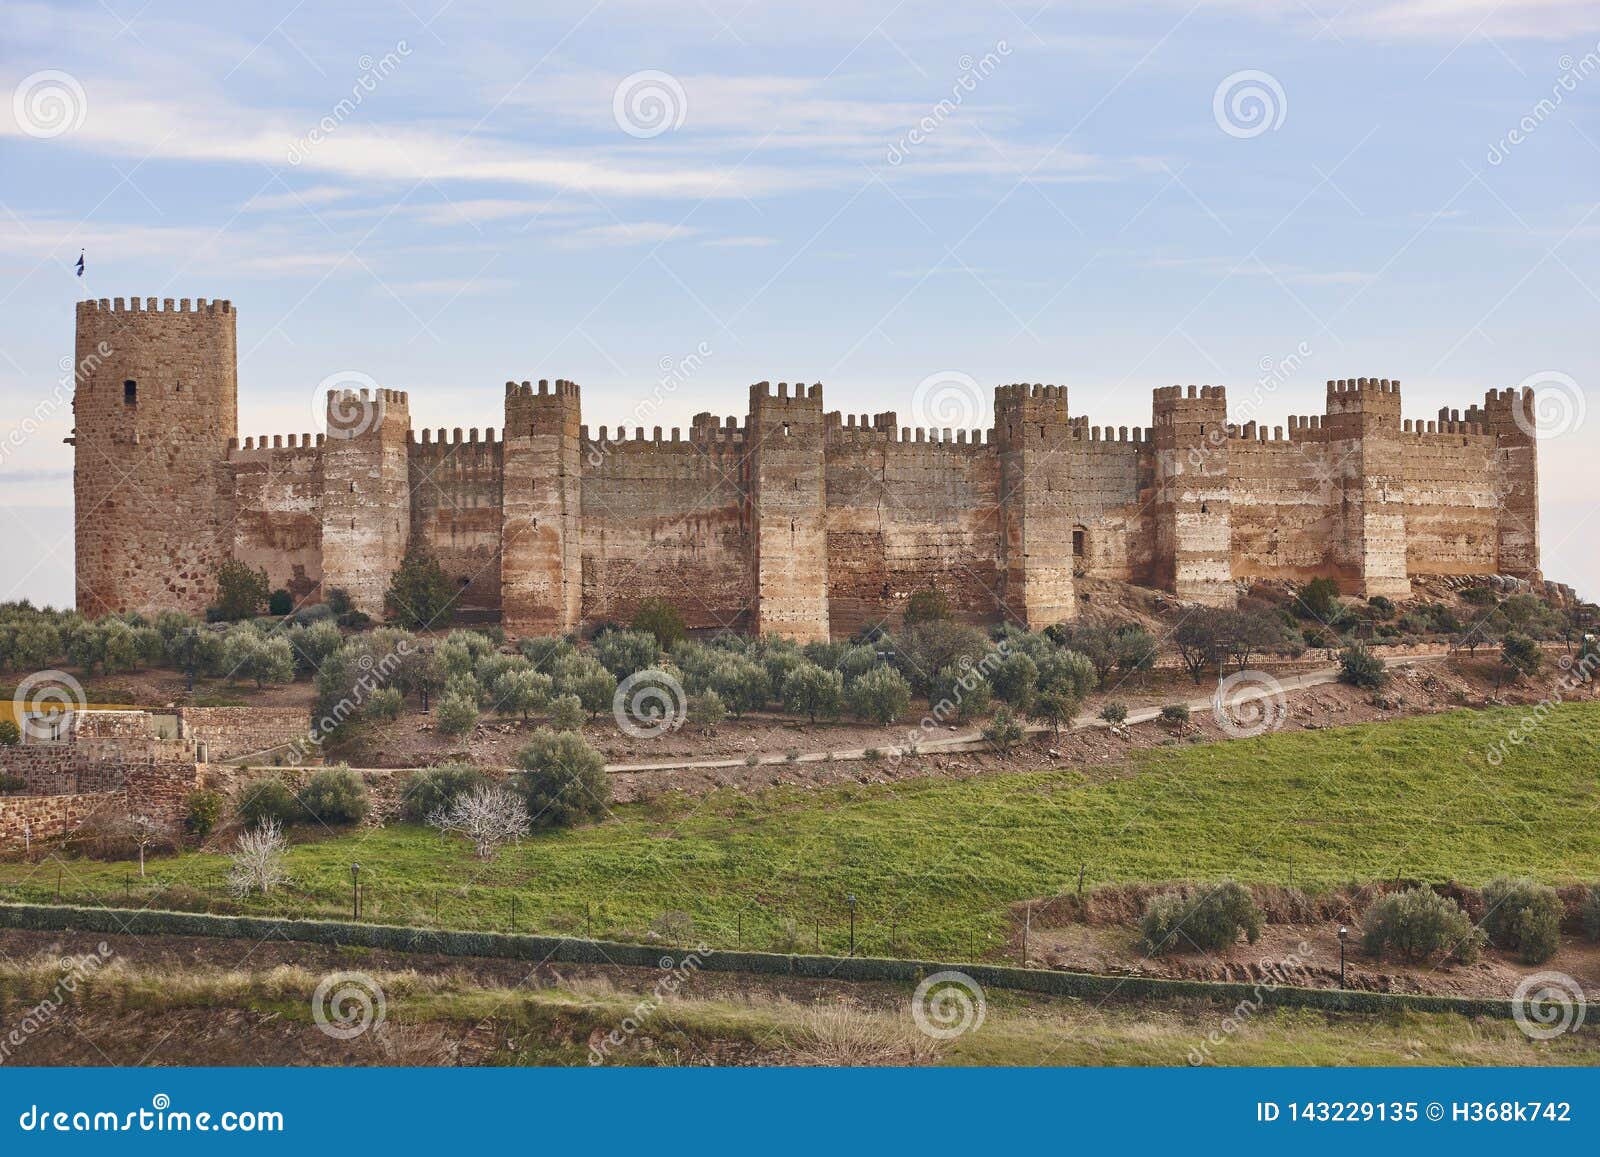 medieval castle towers of burgalimar. banos de la encina, jaen